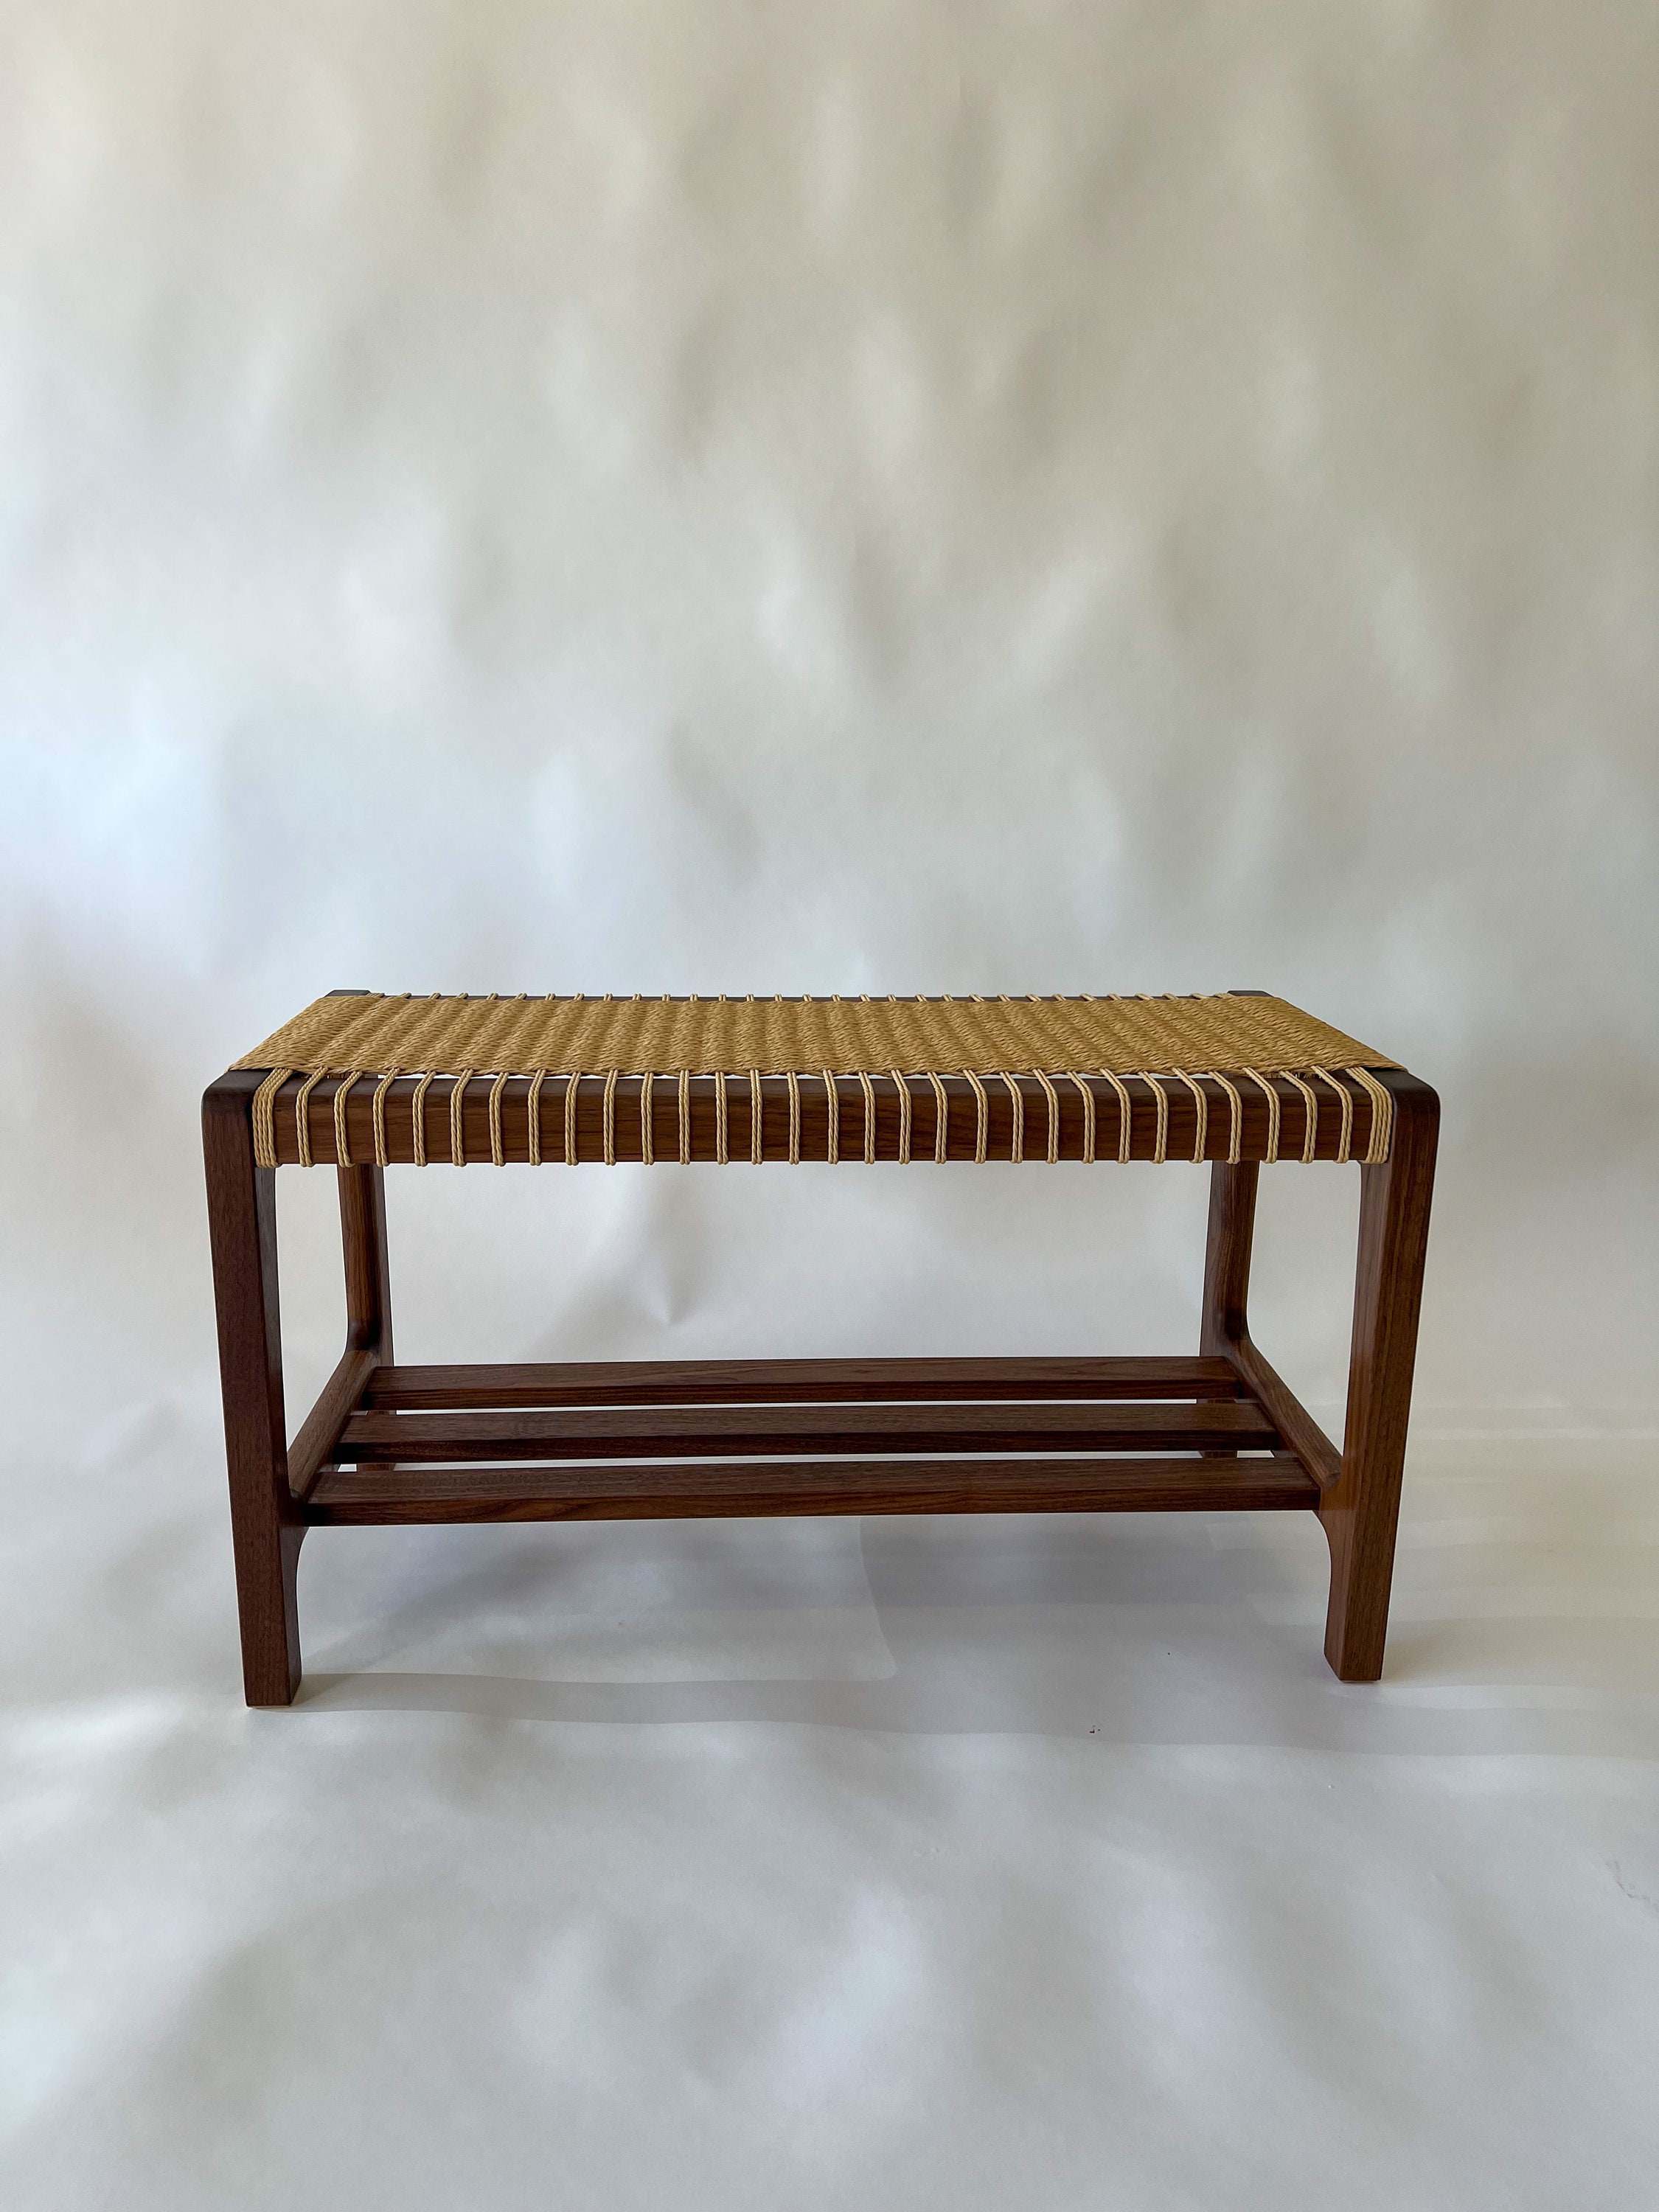 Handmade Danish Cord Bench by Water Street Furniture Studio